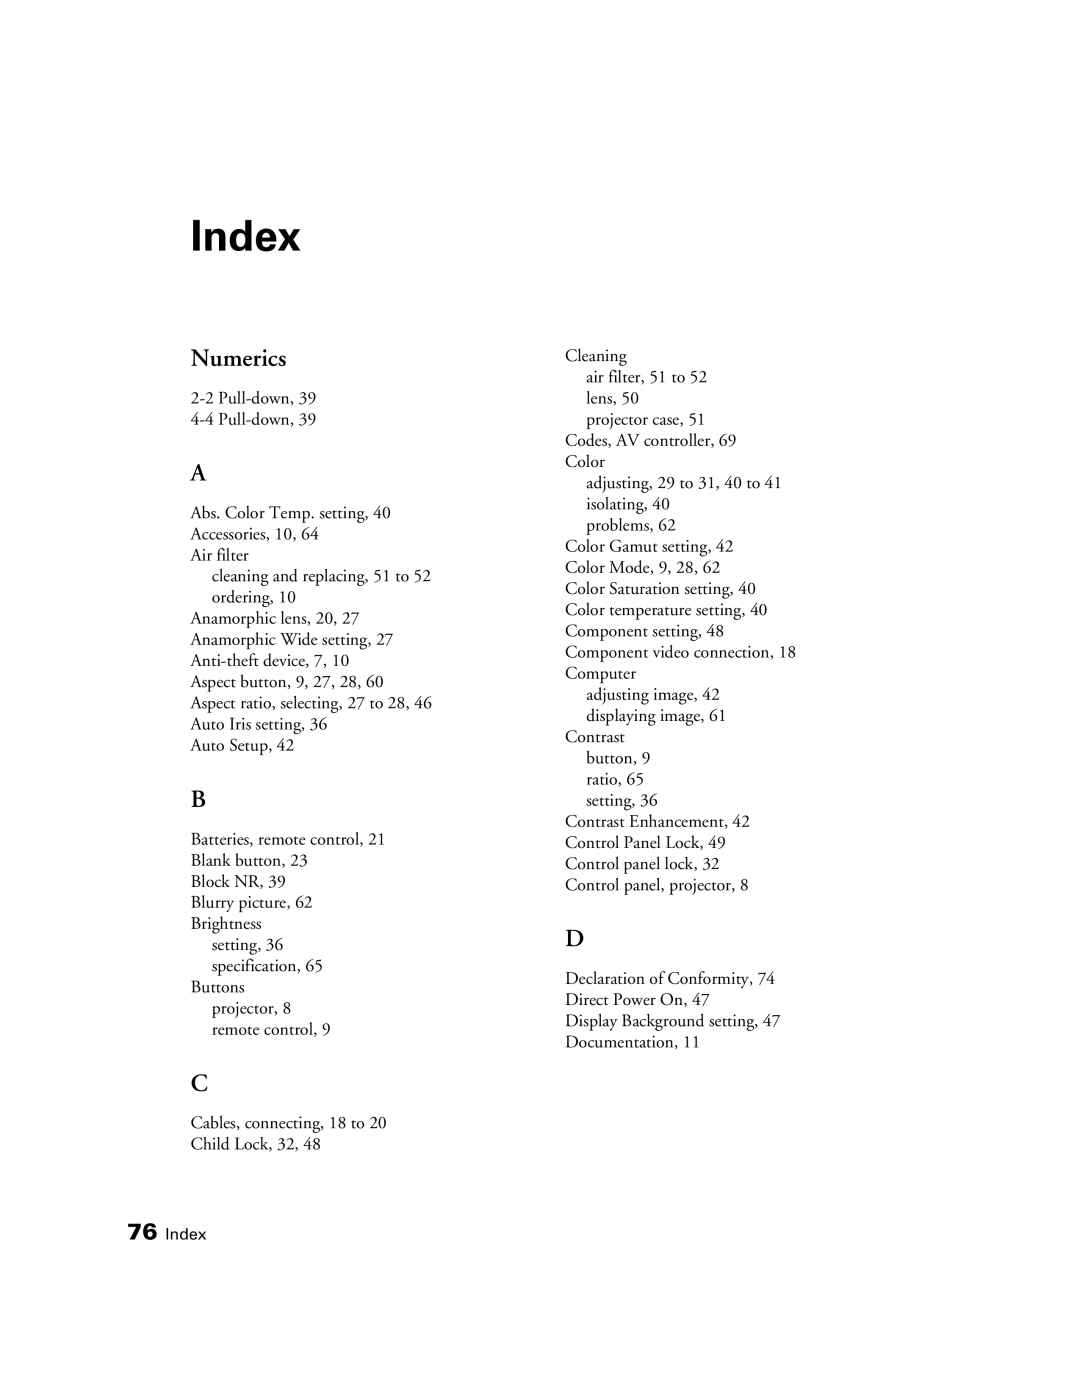 Epson 9350, 9700 manual Index, Numerics 